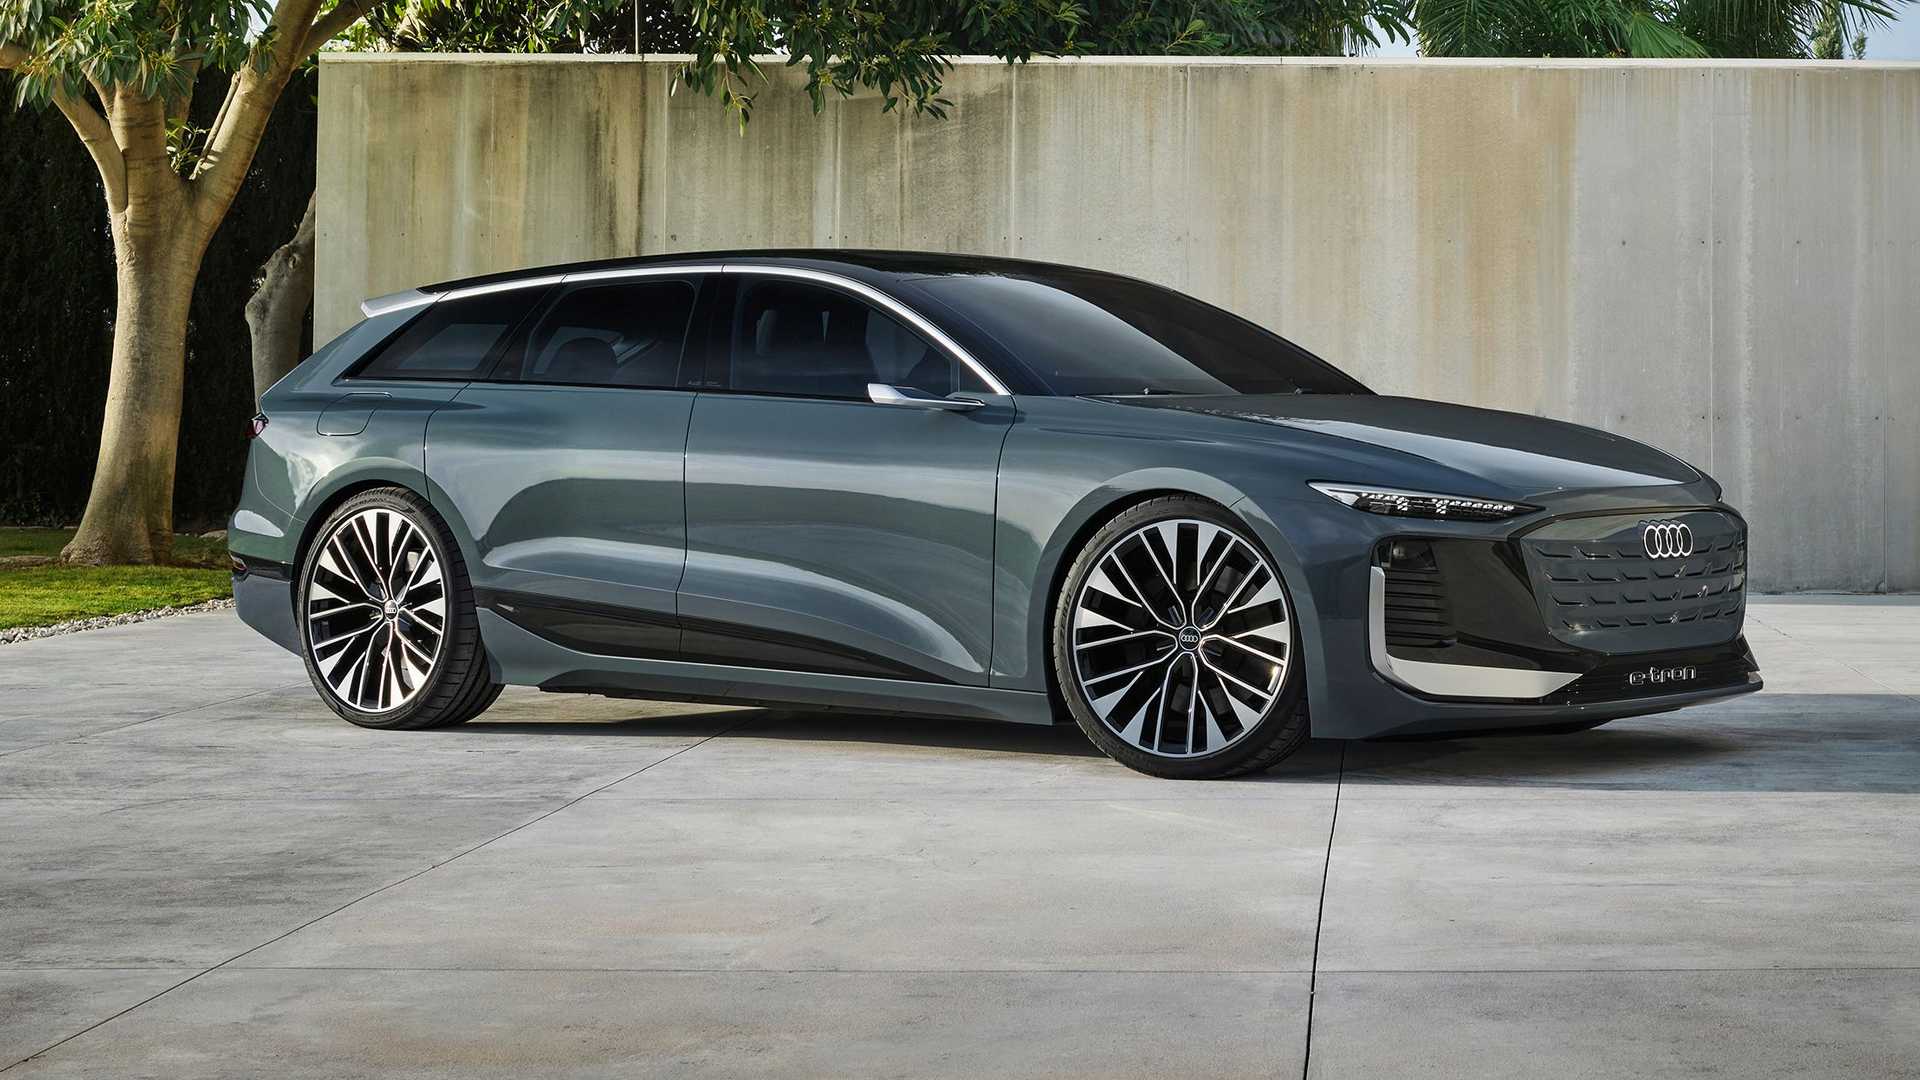 Audi A6 Avant E-Tron Concept